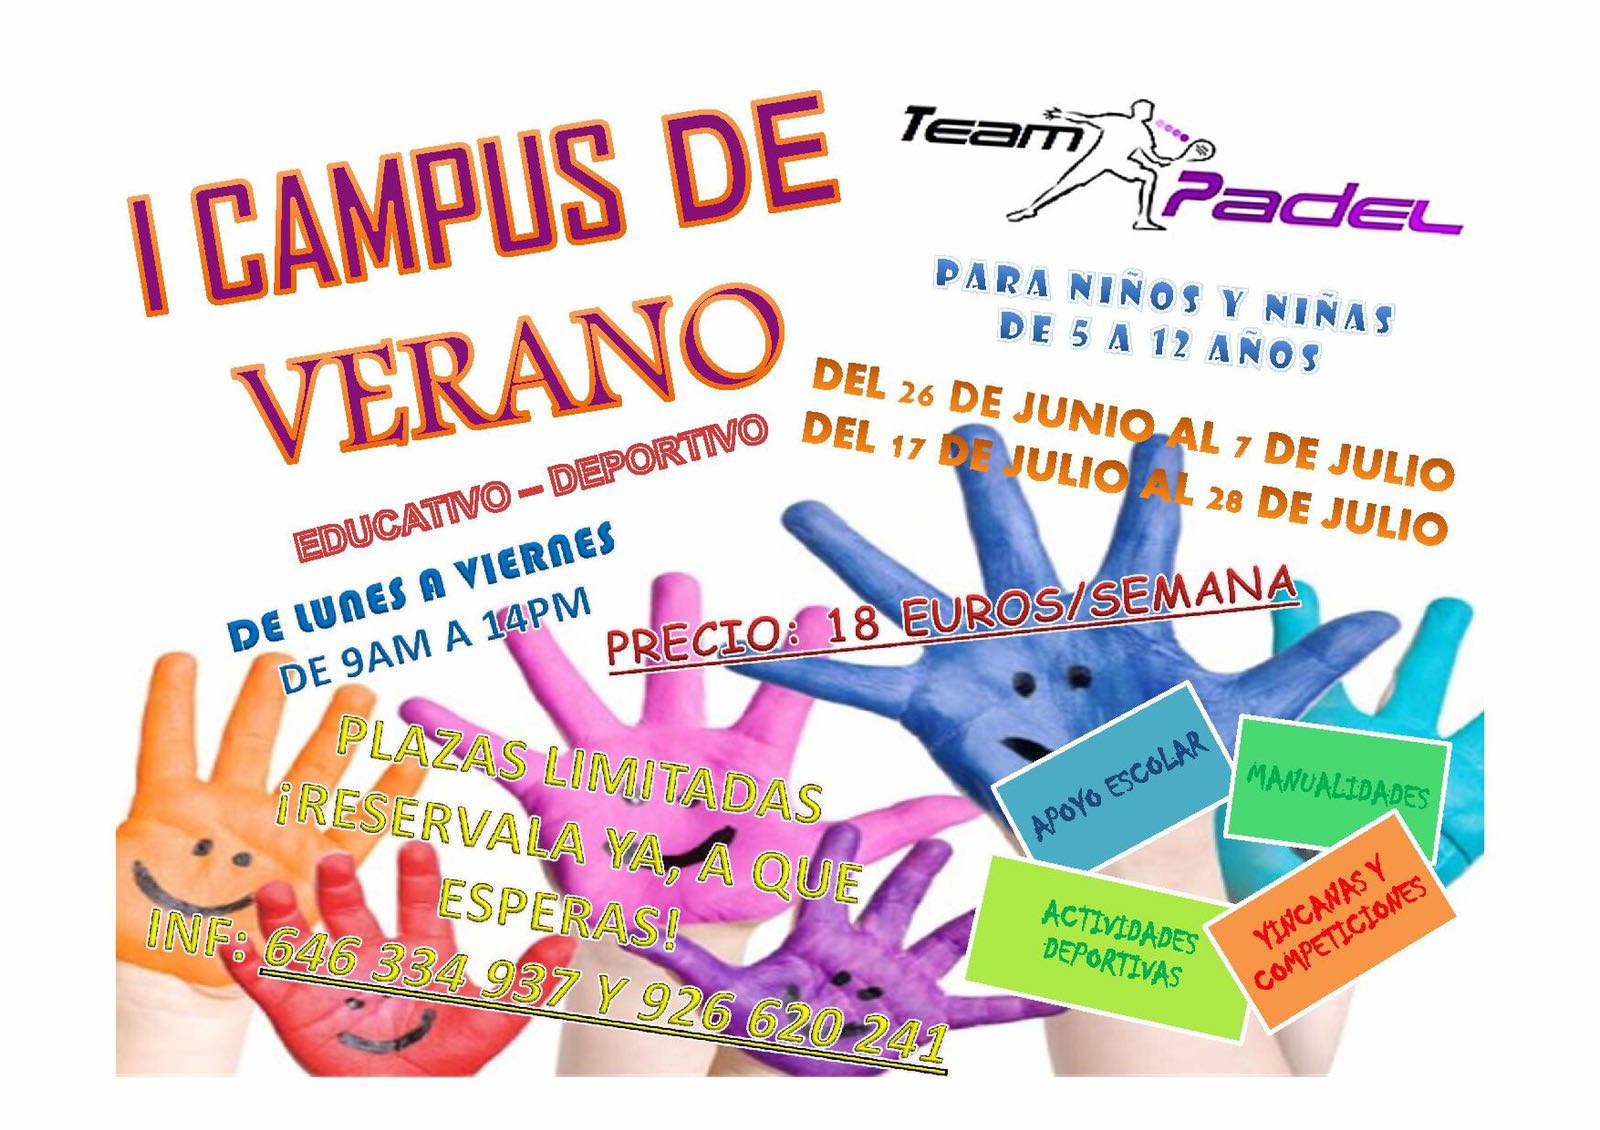 I Campus de Verano Team Padel